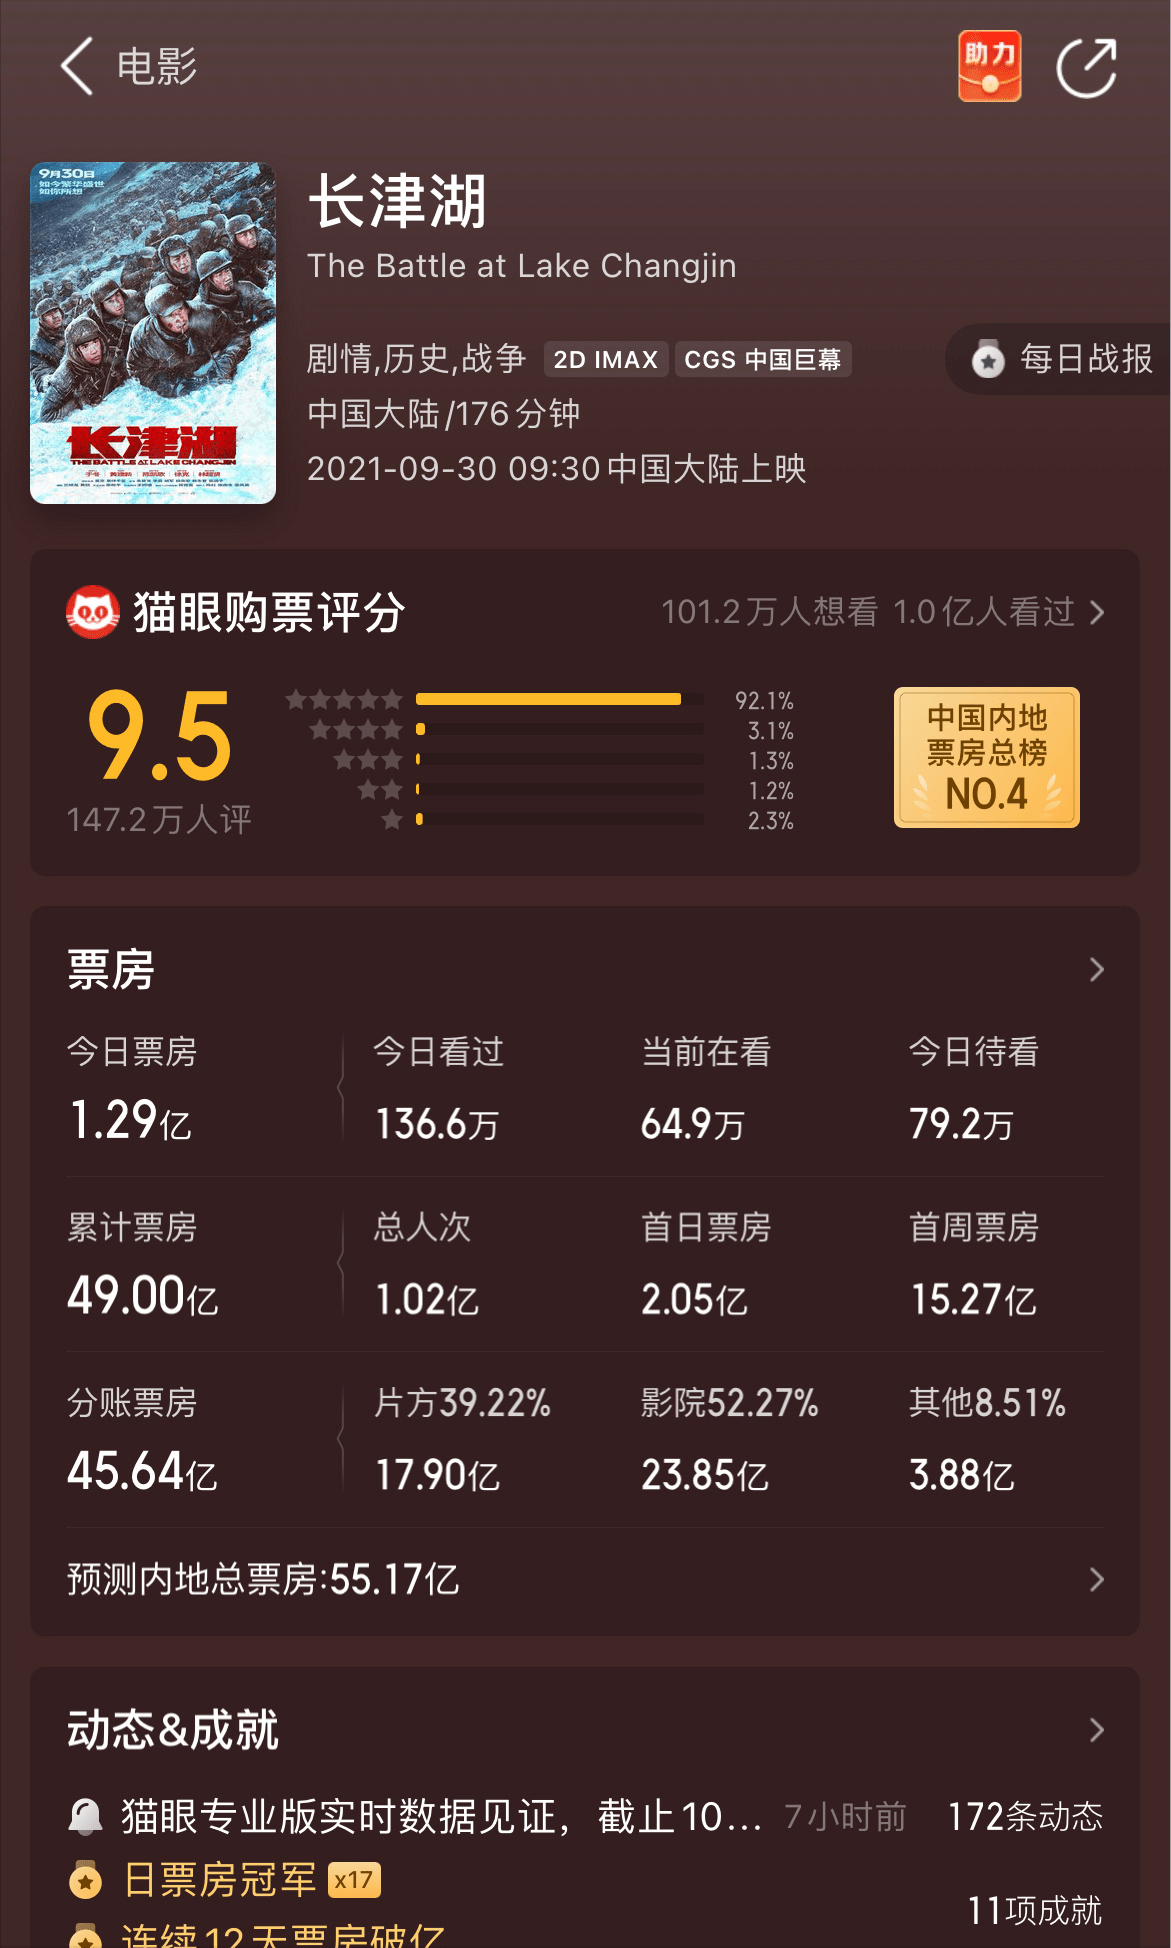 《长津湖》票房破49亿 位列中国影史票房榜第四